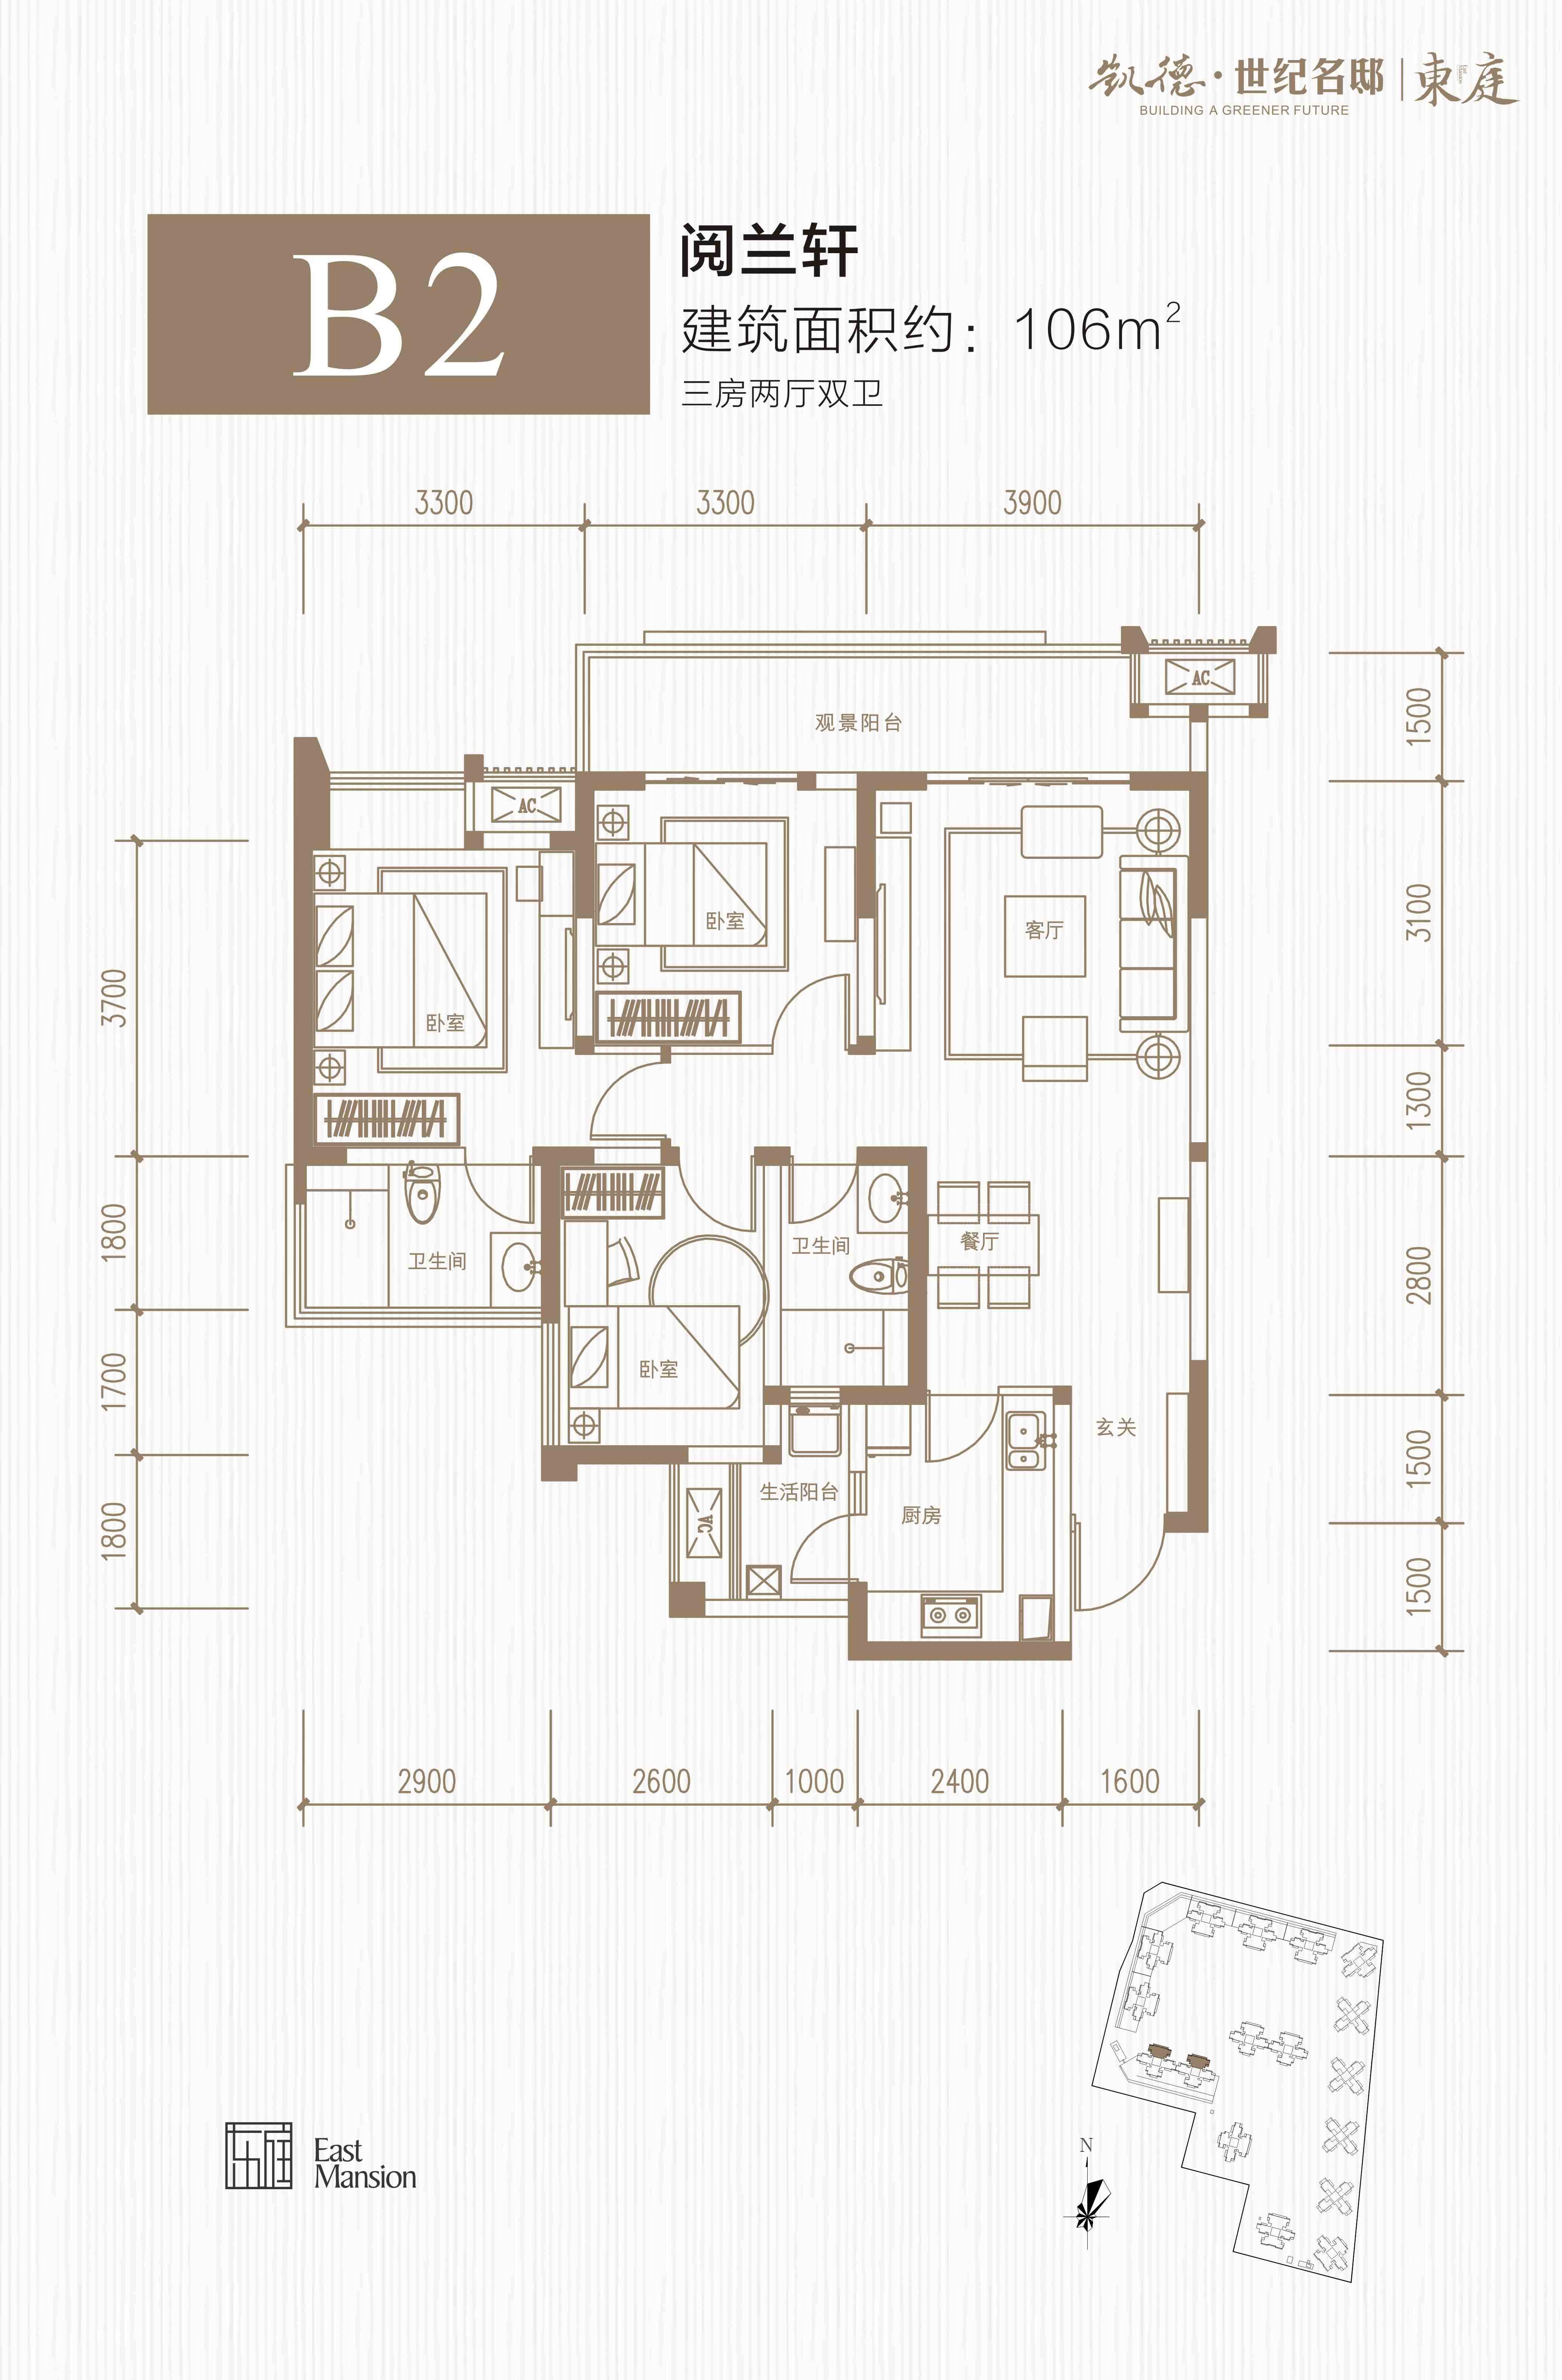 凯德世纪名邸2,9,16栋 B2户型-三室两厅两卫-106㎡